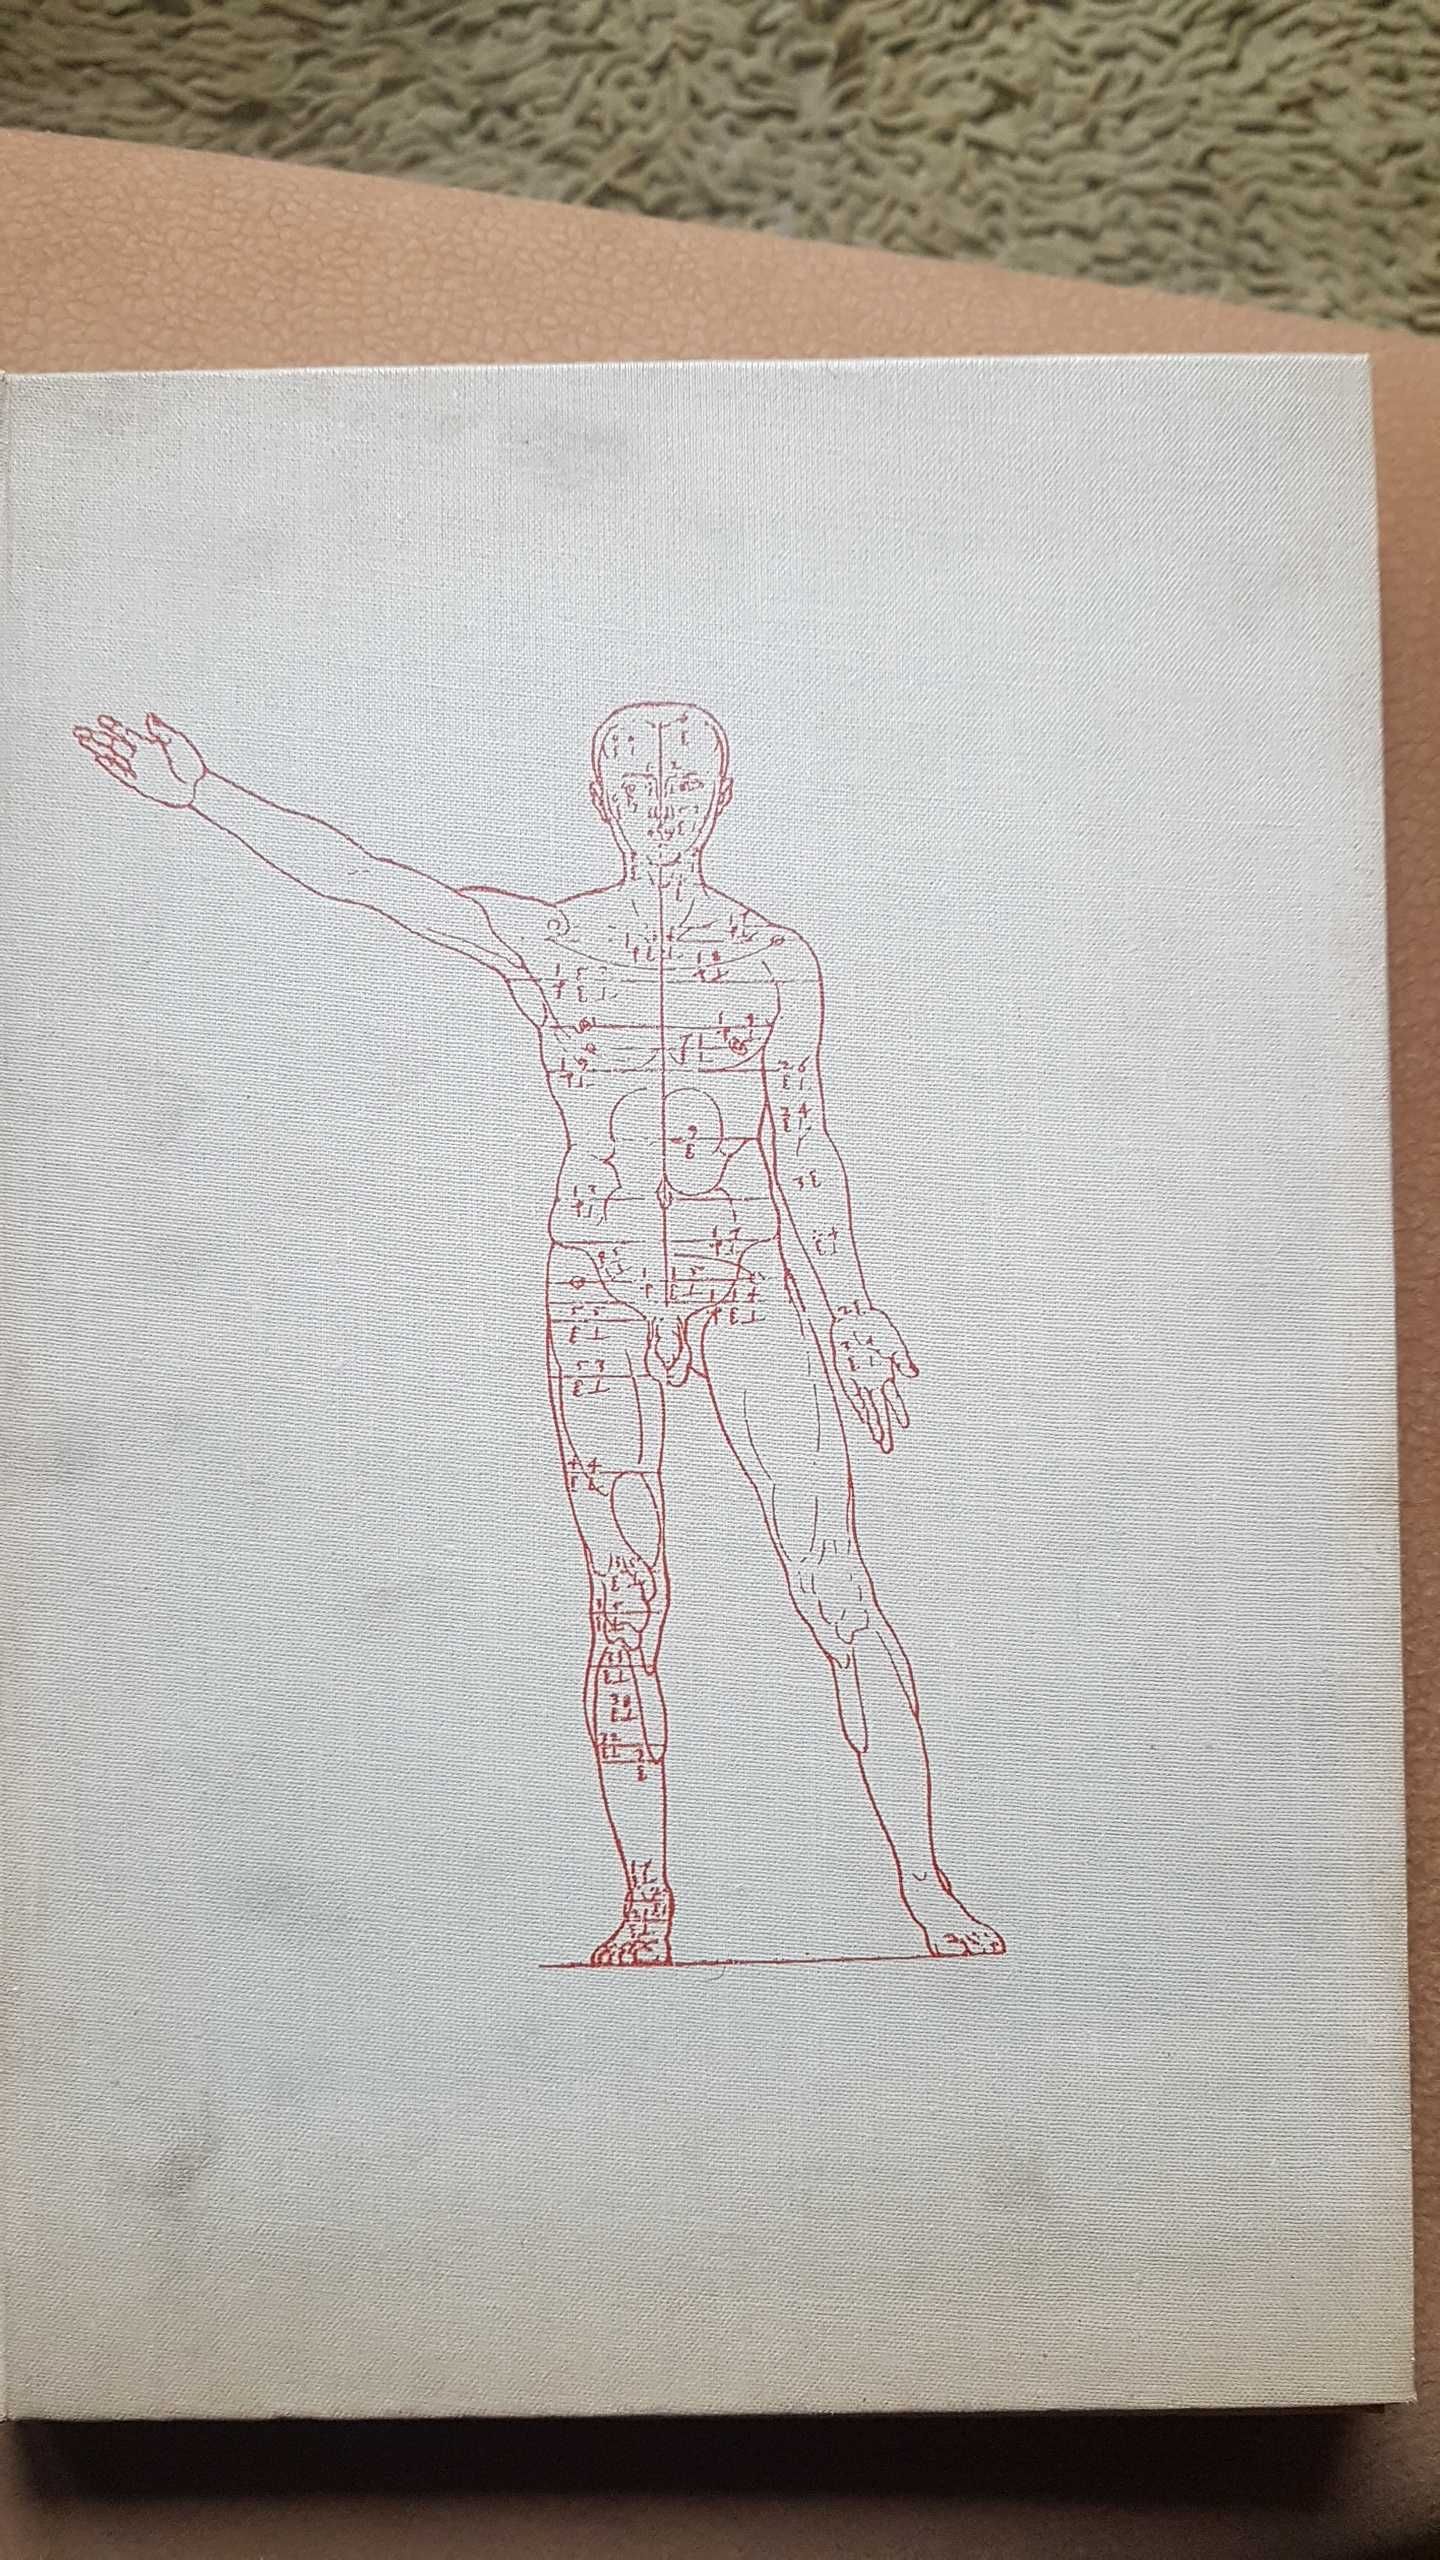 Atlas anatomii człowieka tom 2